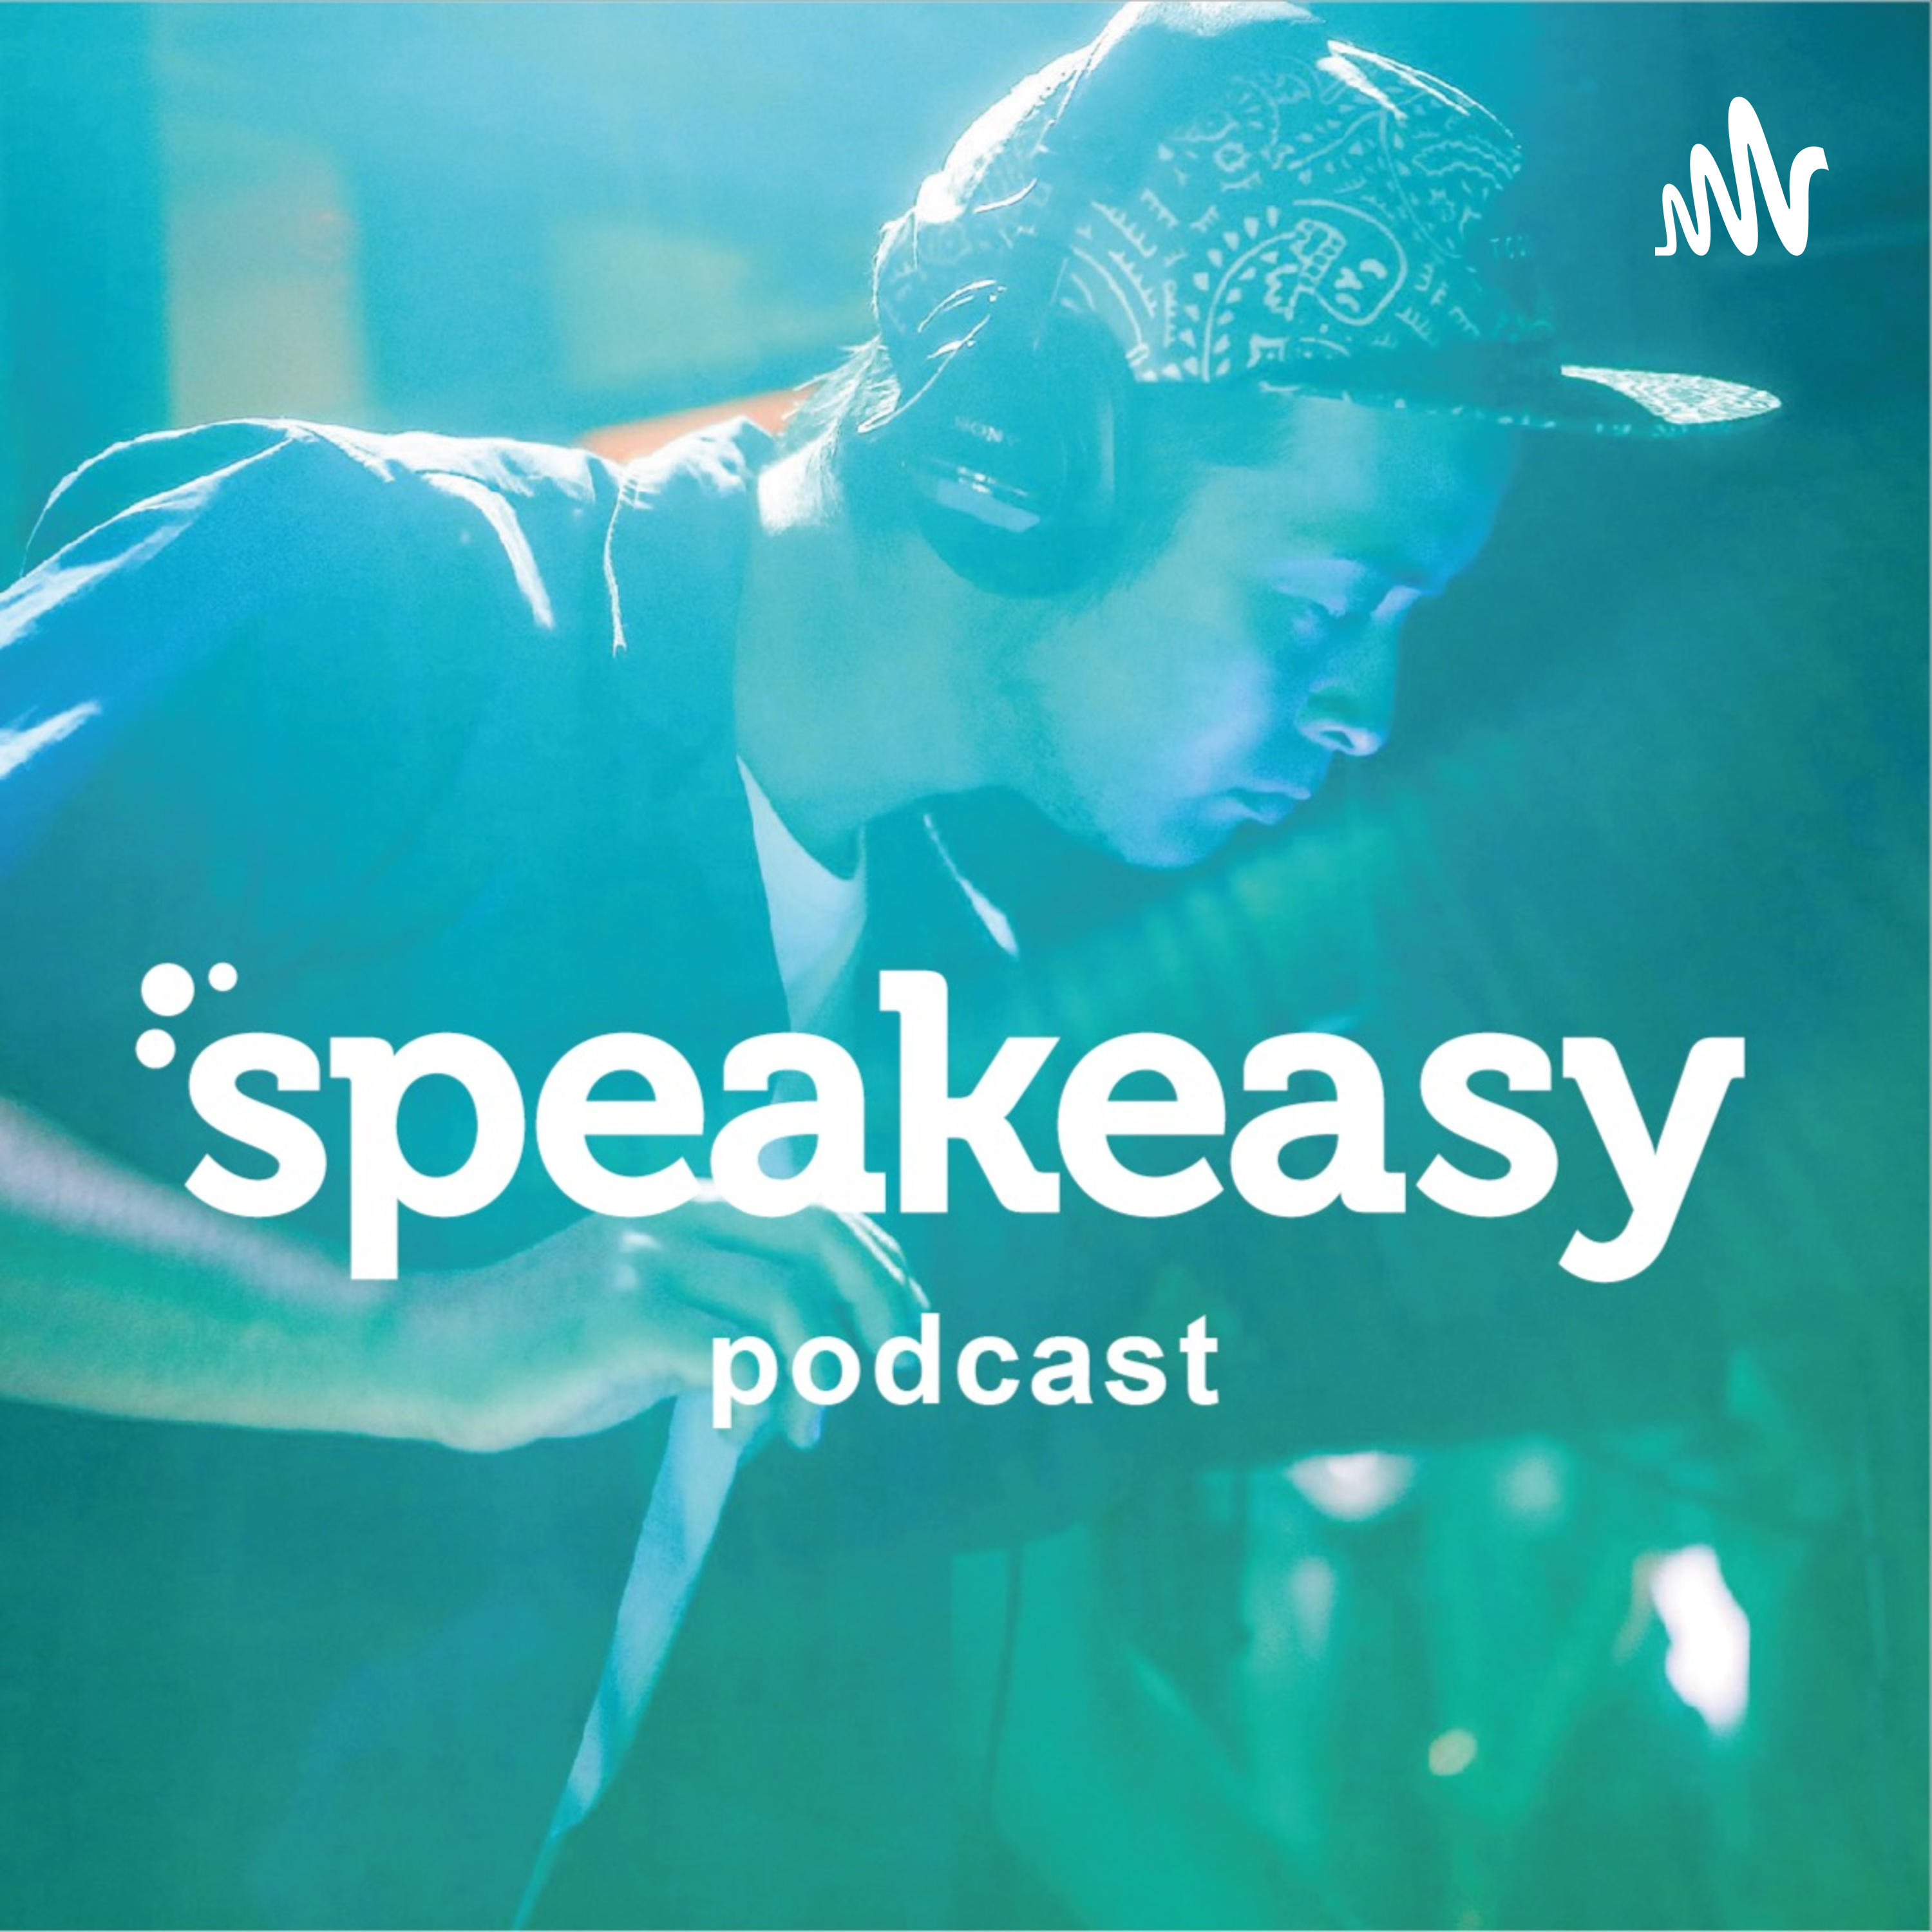 Speakeasy Podcast 今週注目の洋楽5曲 ニッキー ミナージュとリル ベイビーのコラボ曲 テイト マクレーの新曲など Spice エンタメ特化型情報メディア スパイス